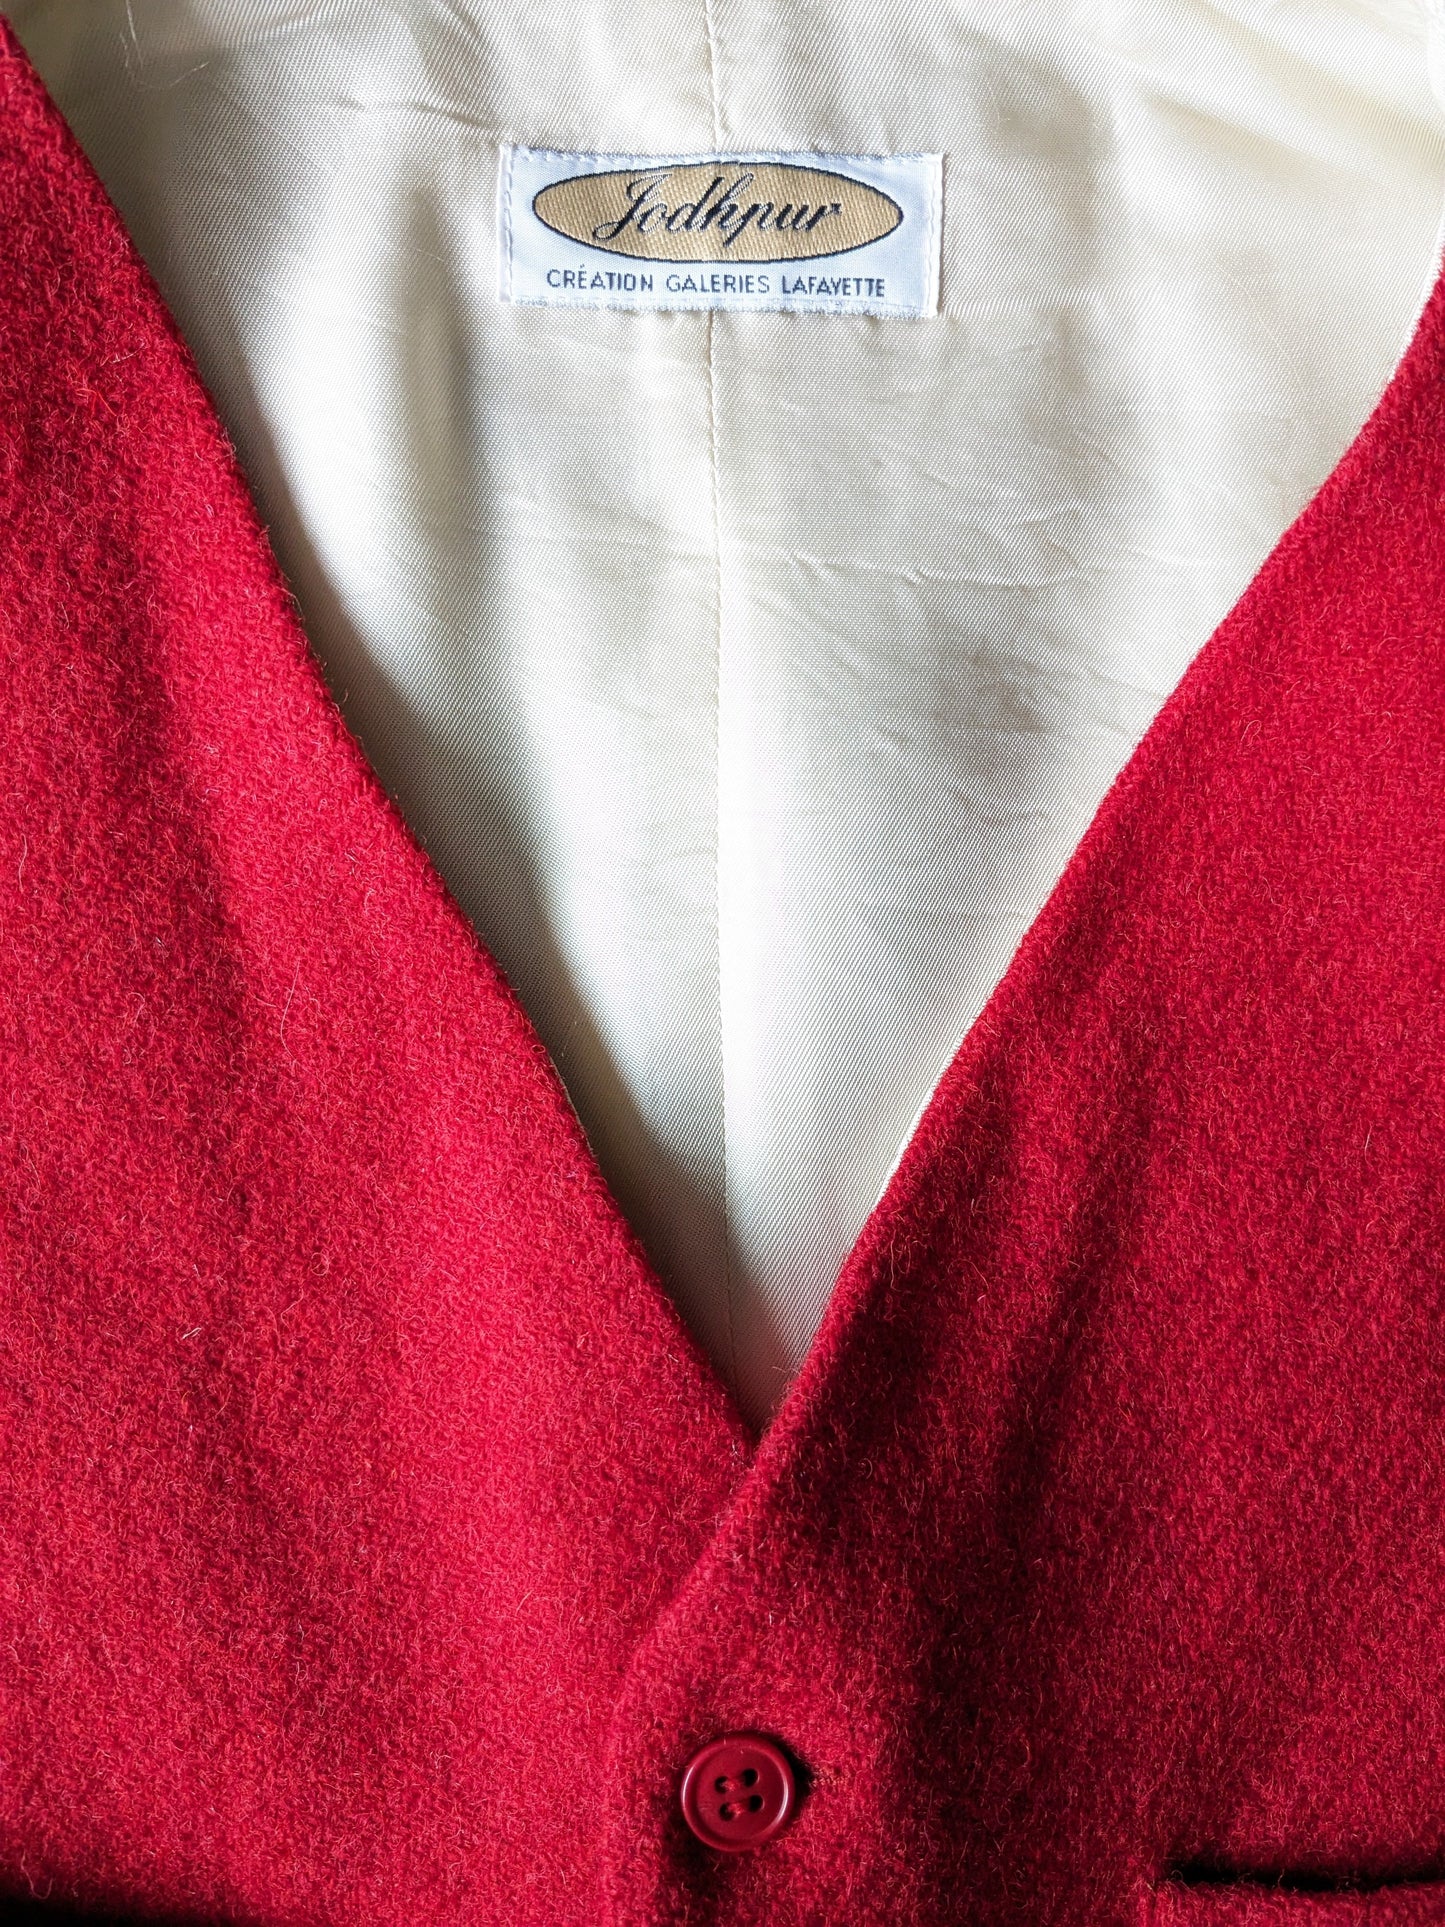 Gilet vintage di lana jodhpur. Rosso colorato. Taglia M.